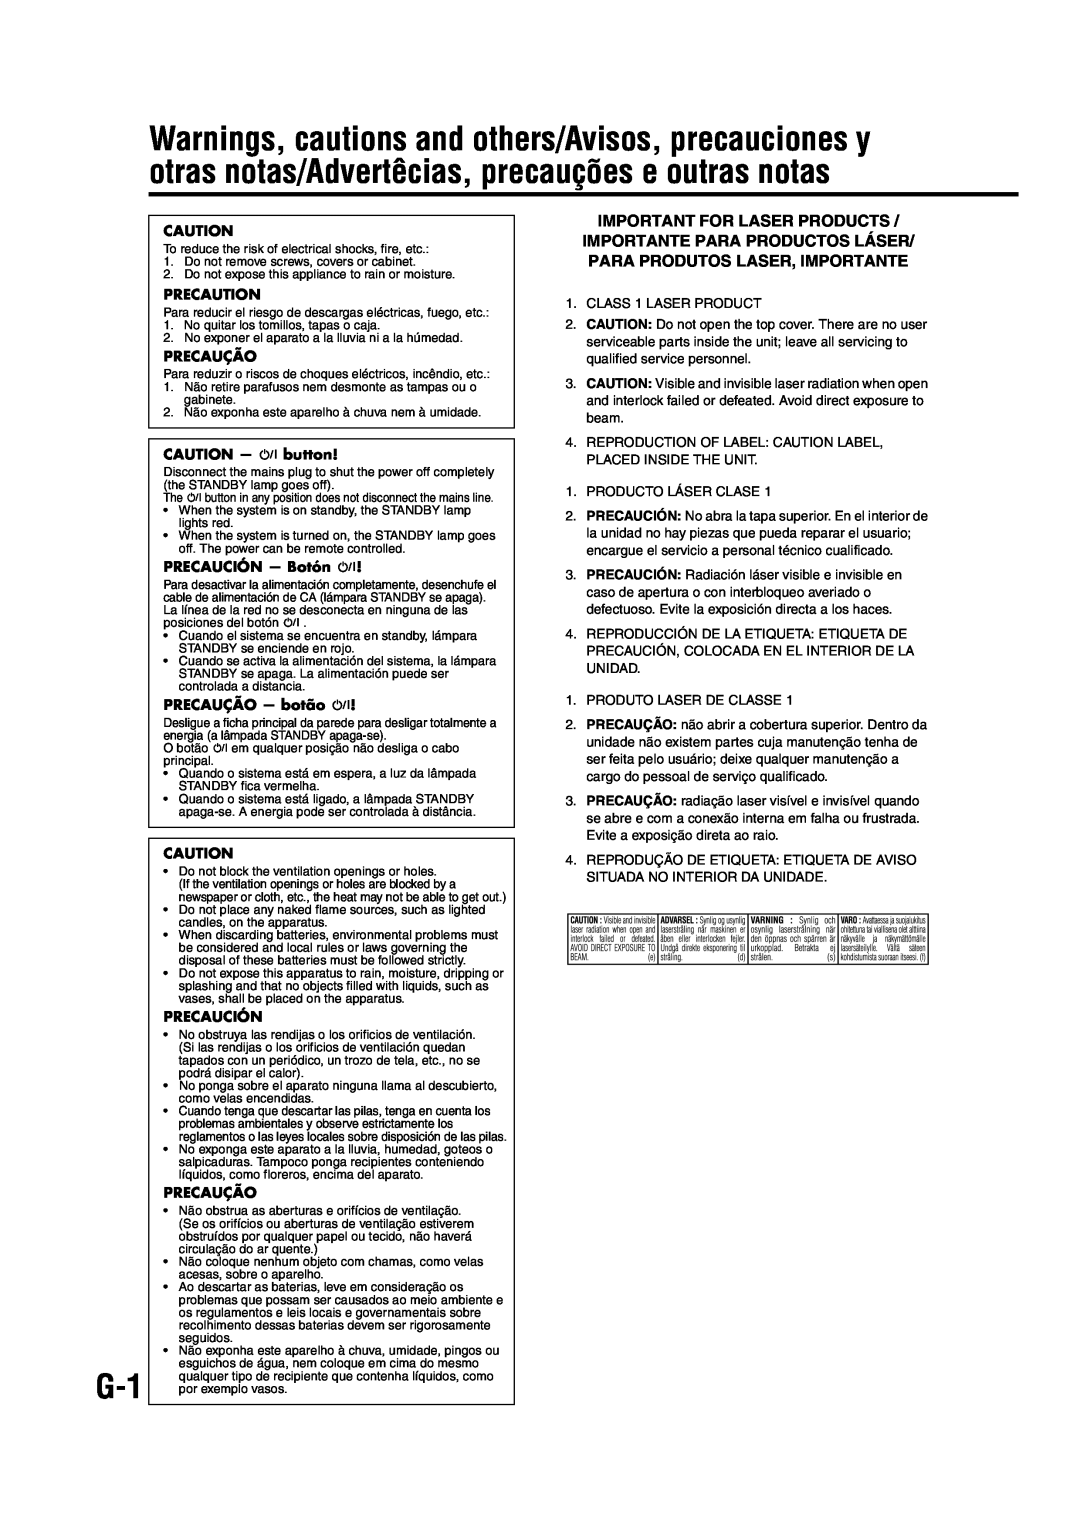 JVC EX-A1 manual Precaution, Precaução, CAUTION - F button, PRECAUCIÓN — Botón F, PRECAUÇÃO — botão F, Precaución 